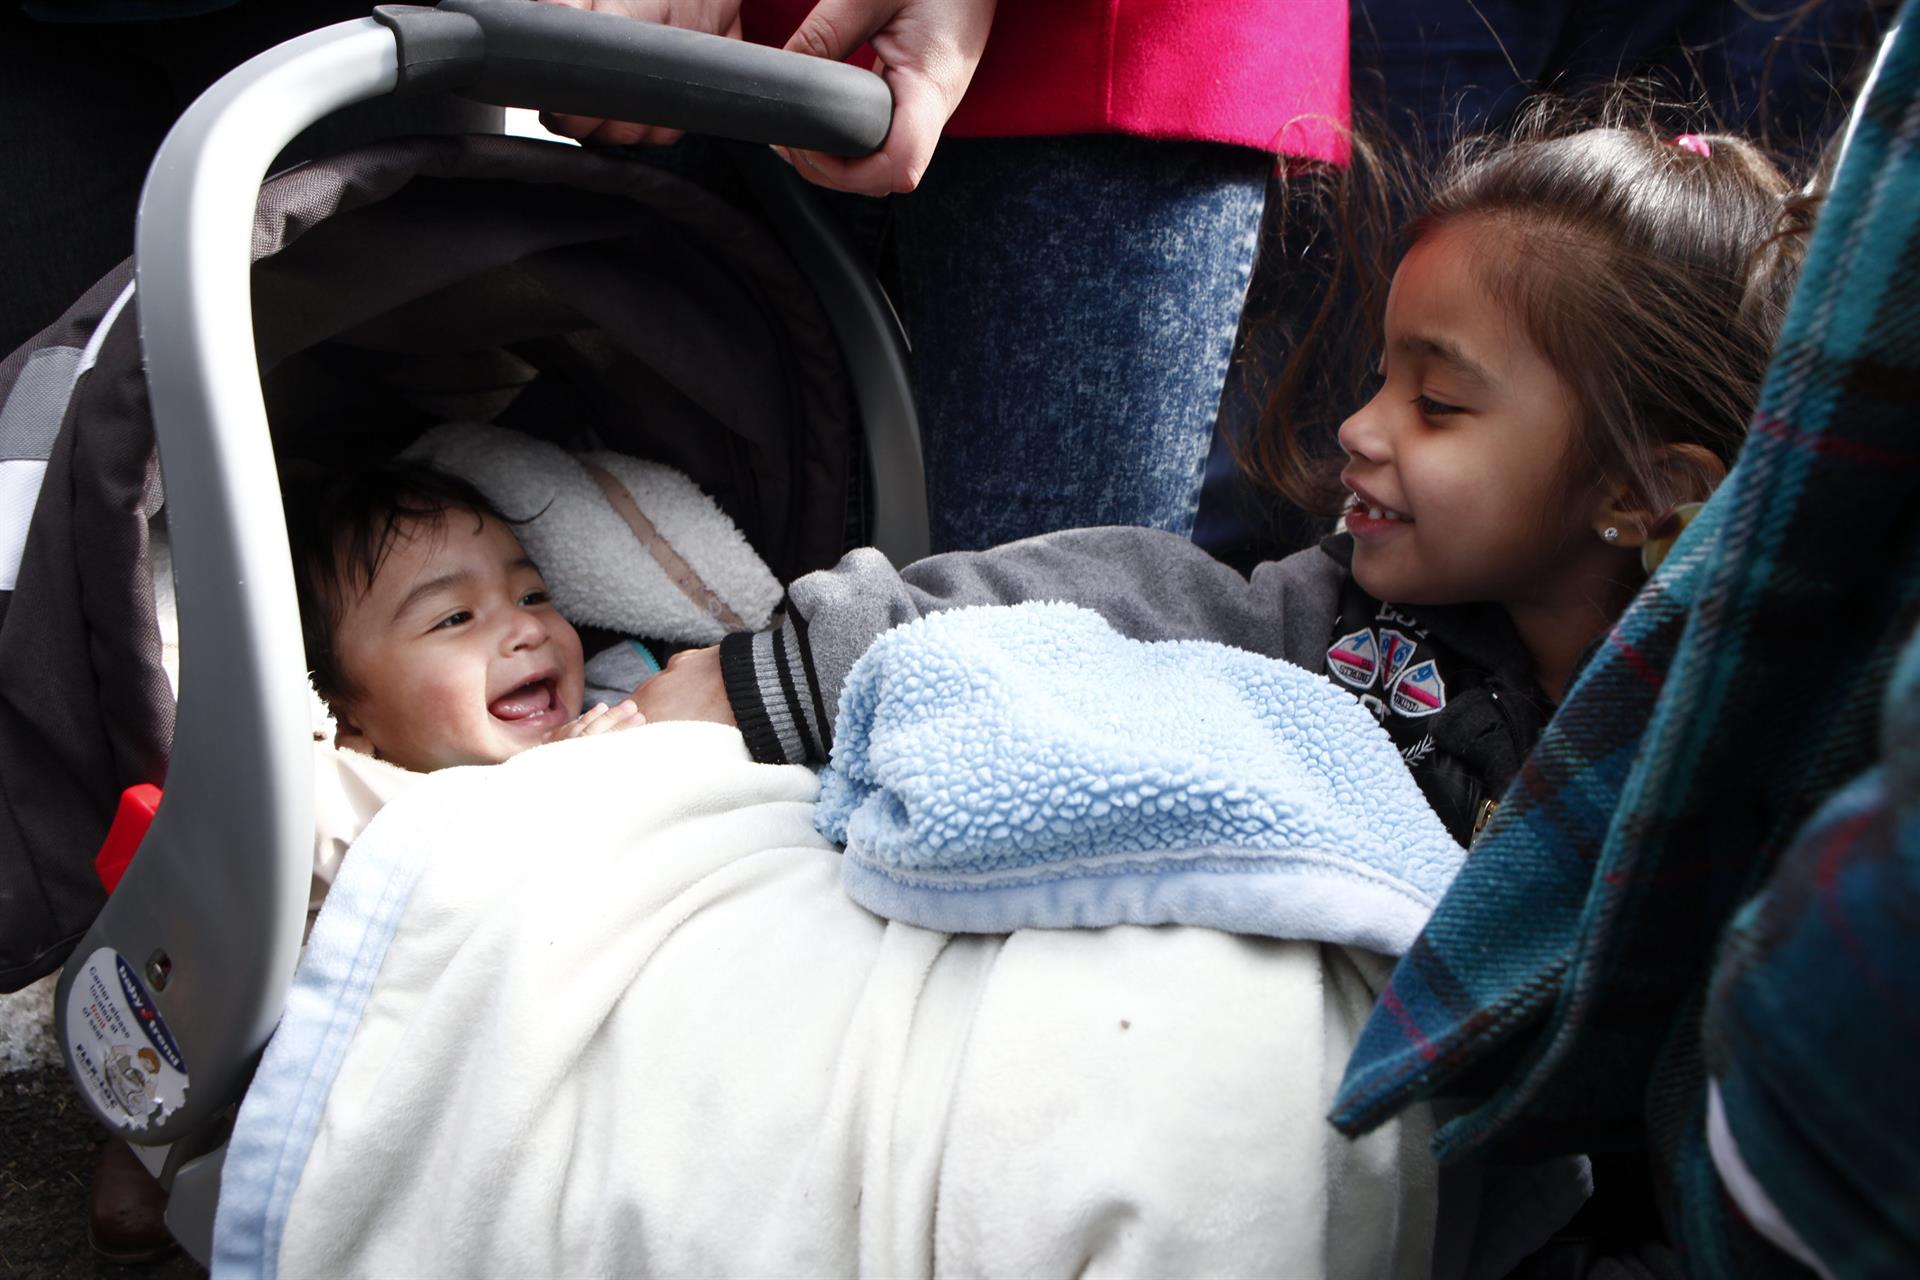 Vista de un bebé que sonríe junto a su hermana pequeña. Imagen de archivo. EFE/ Kena Betancur
